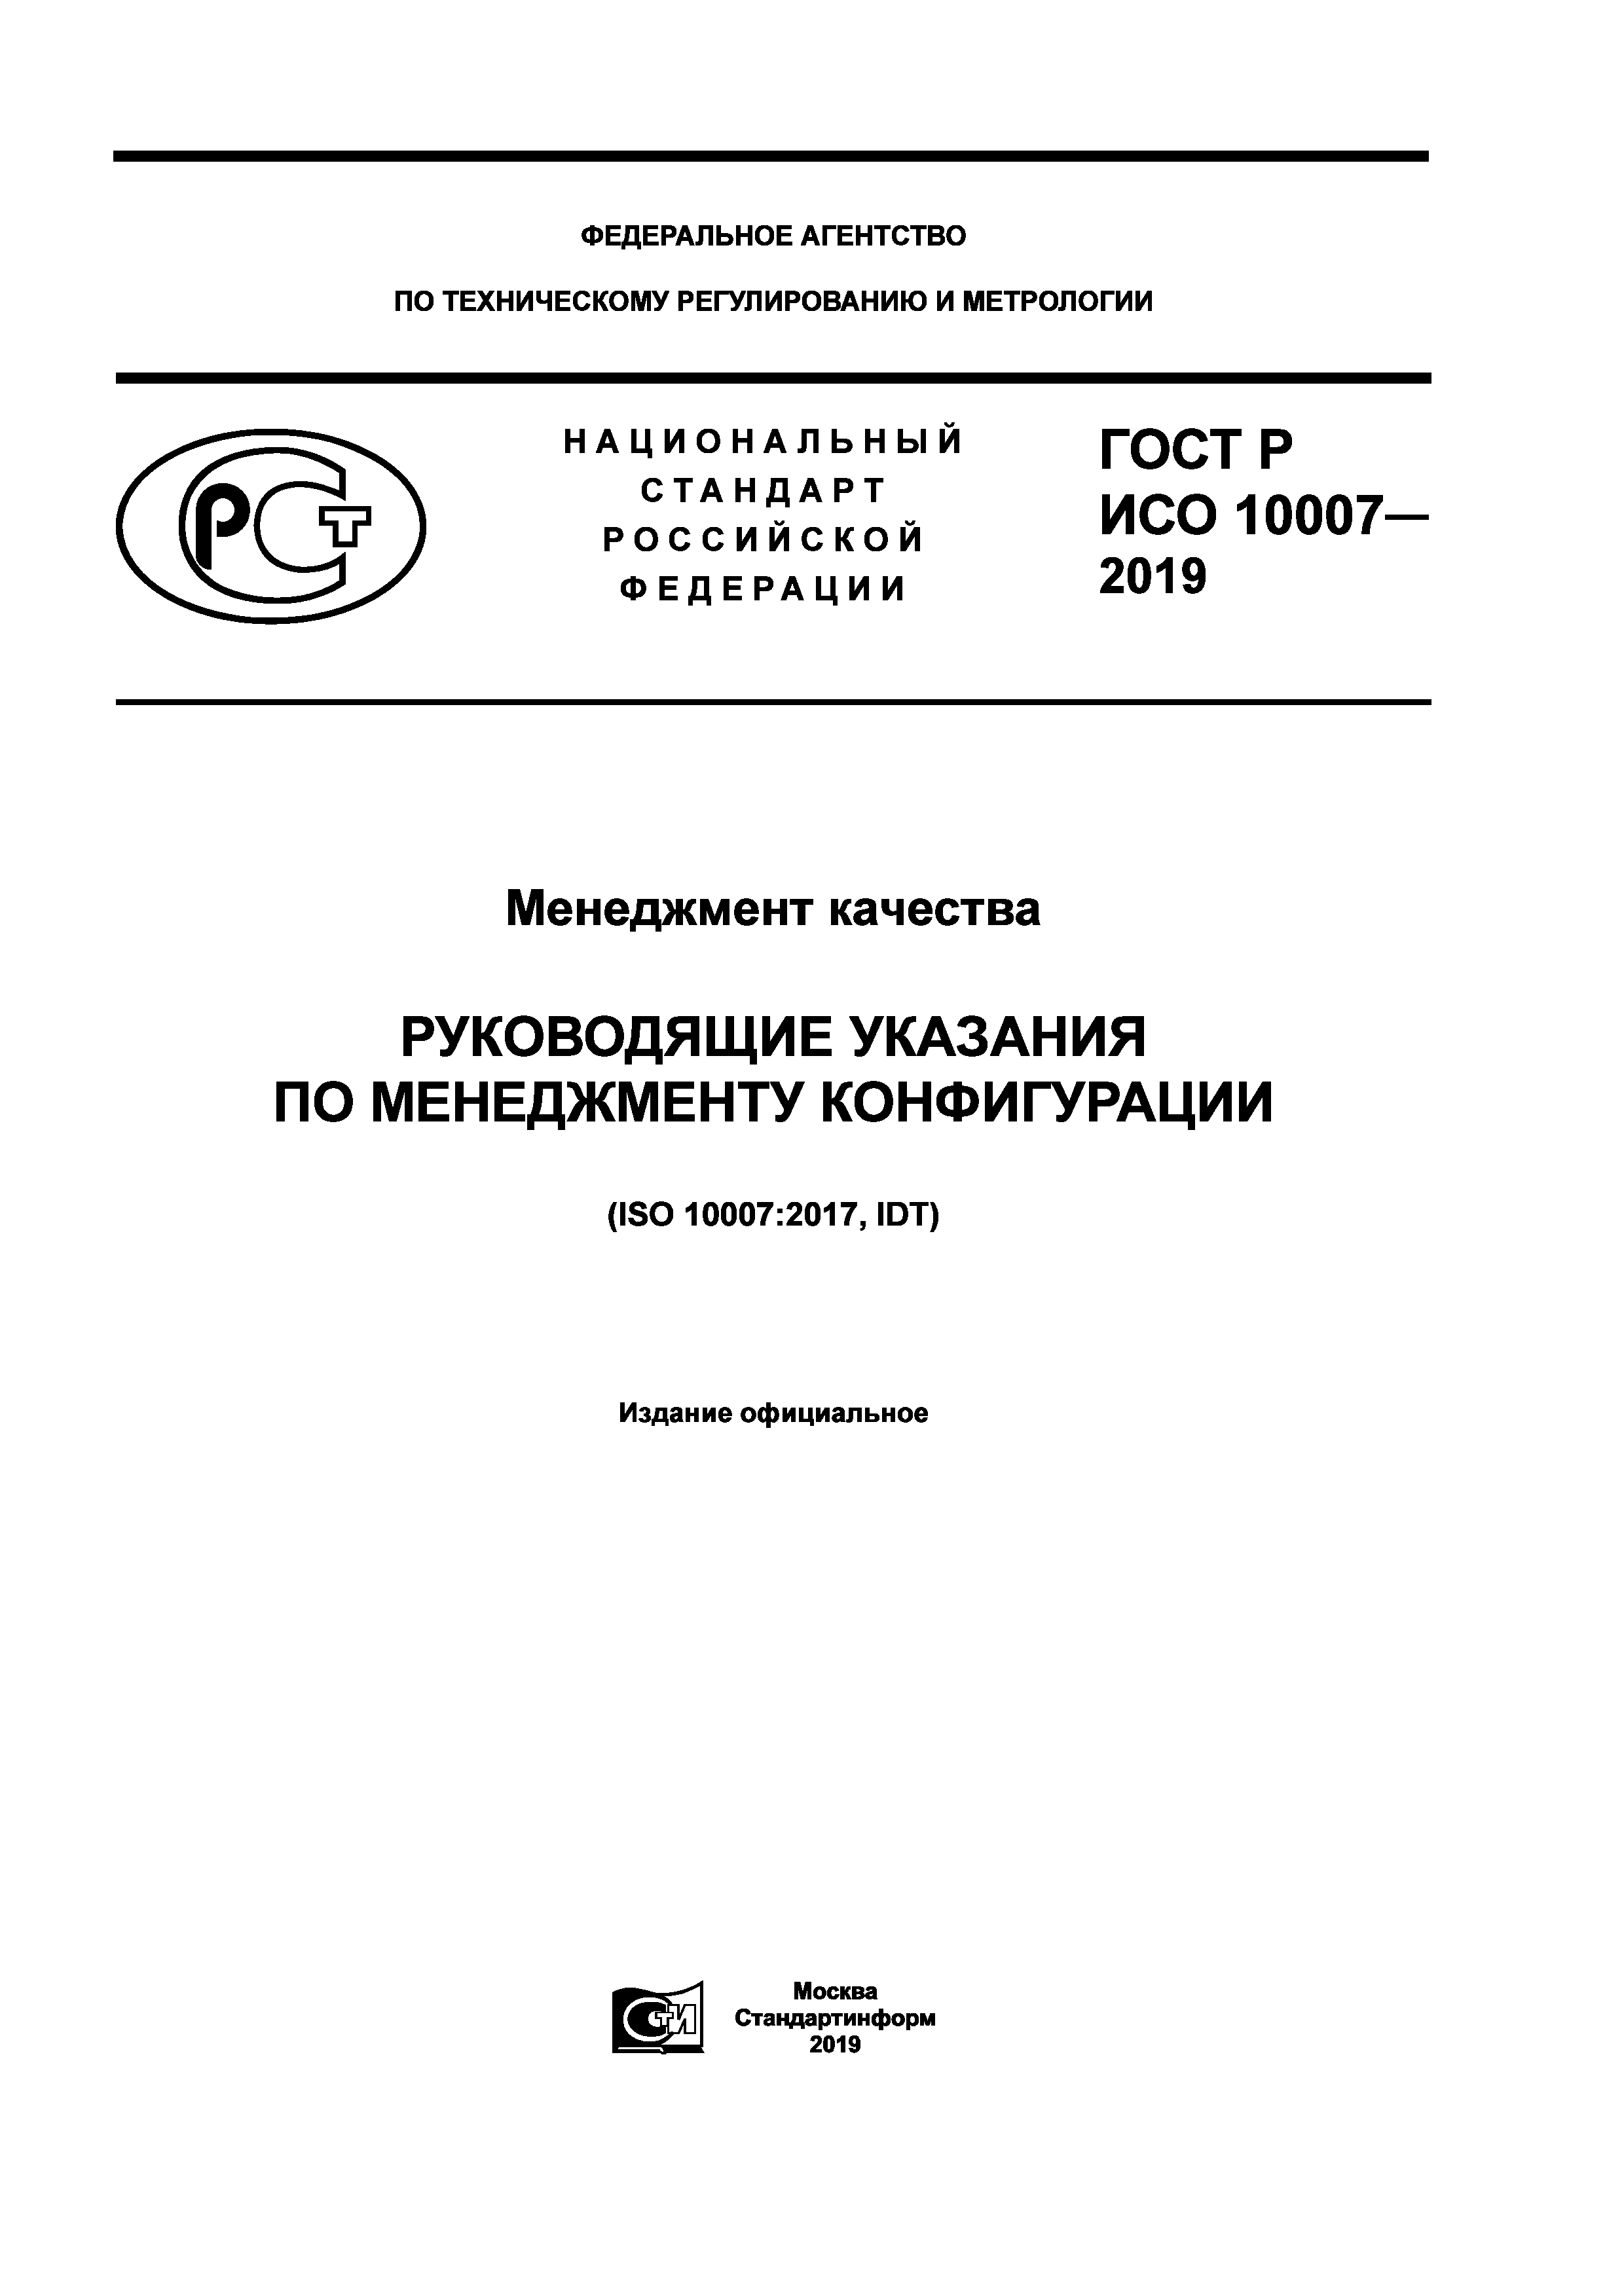 ГОСТ Р ИСО 10007-2019